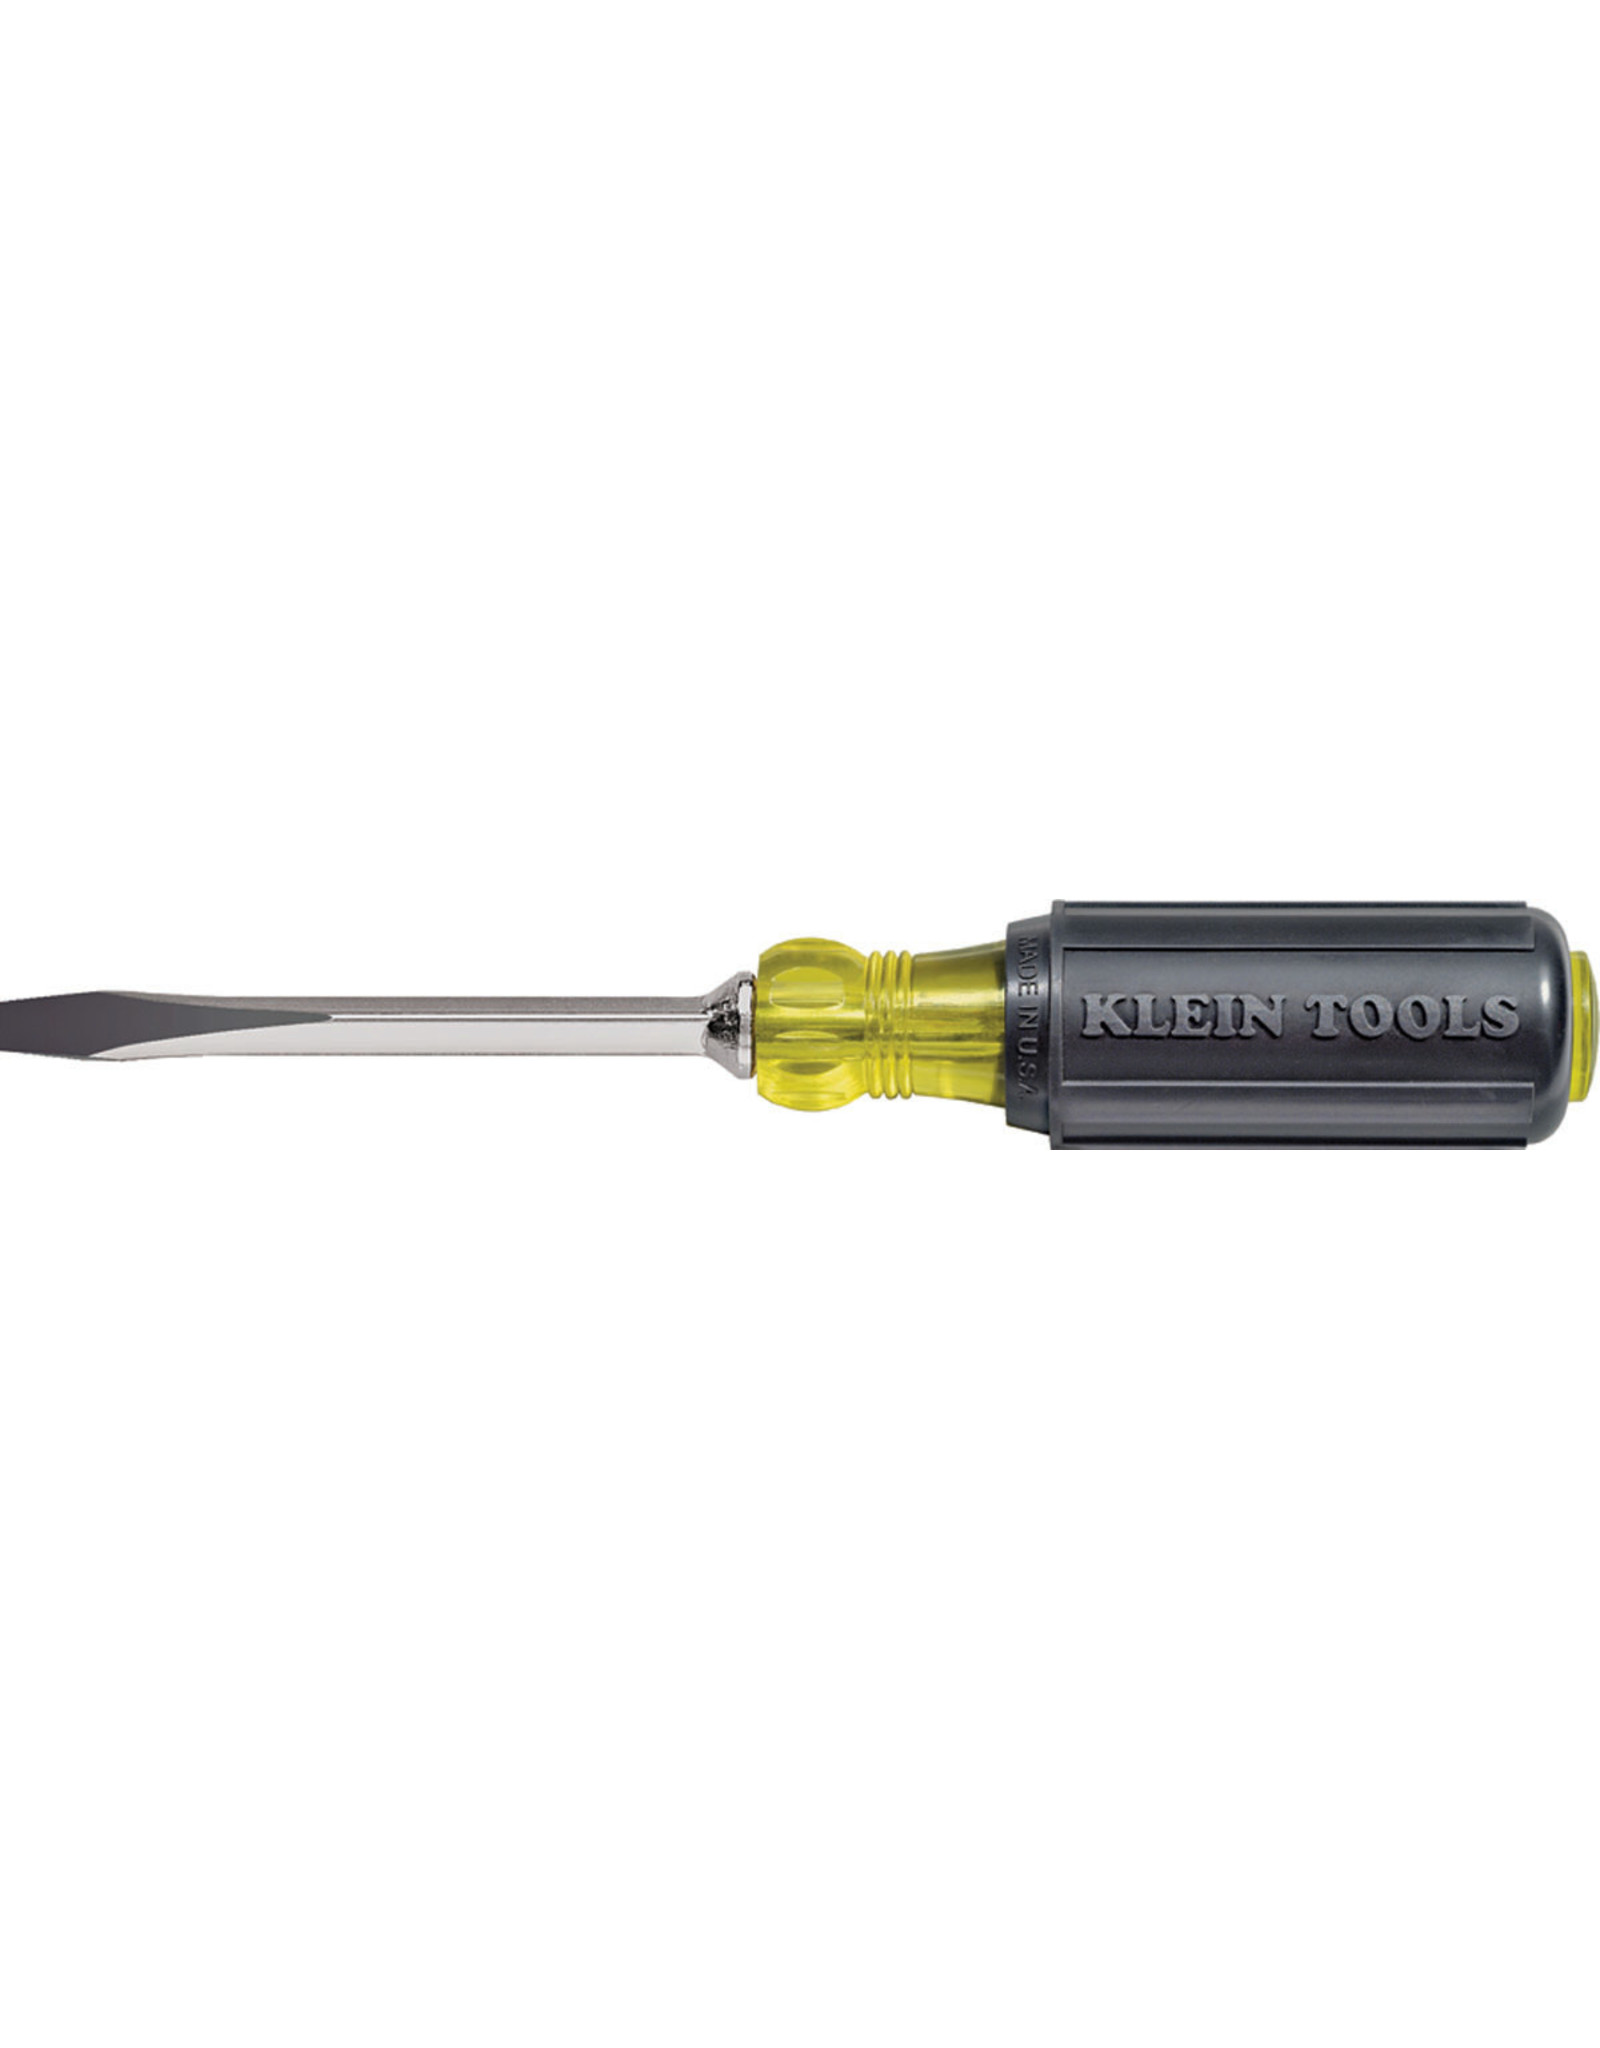 Klein Klein Tools 600-4 Heavy-Duty Screwdriver, 1/4 in Drive, Keystone Drive, 8-11/32 in OAL, Black Handle